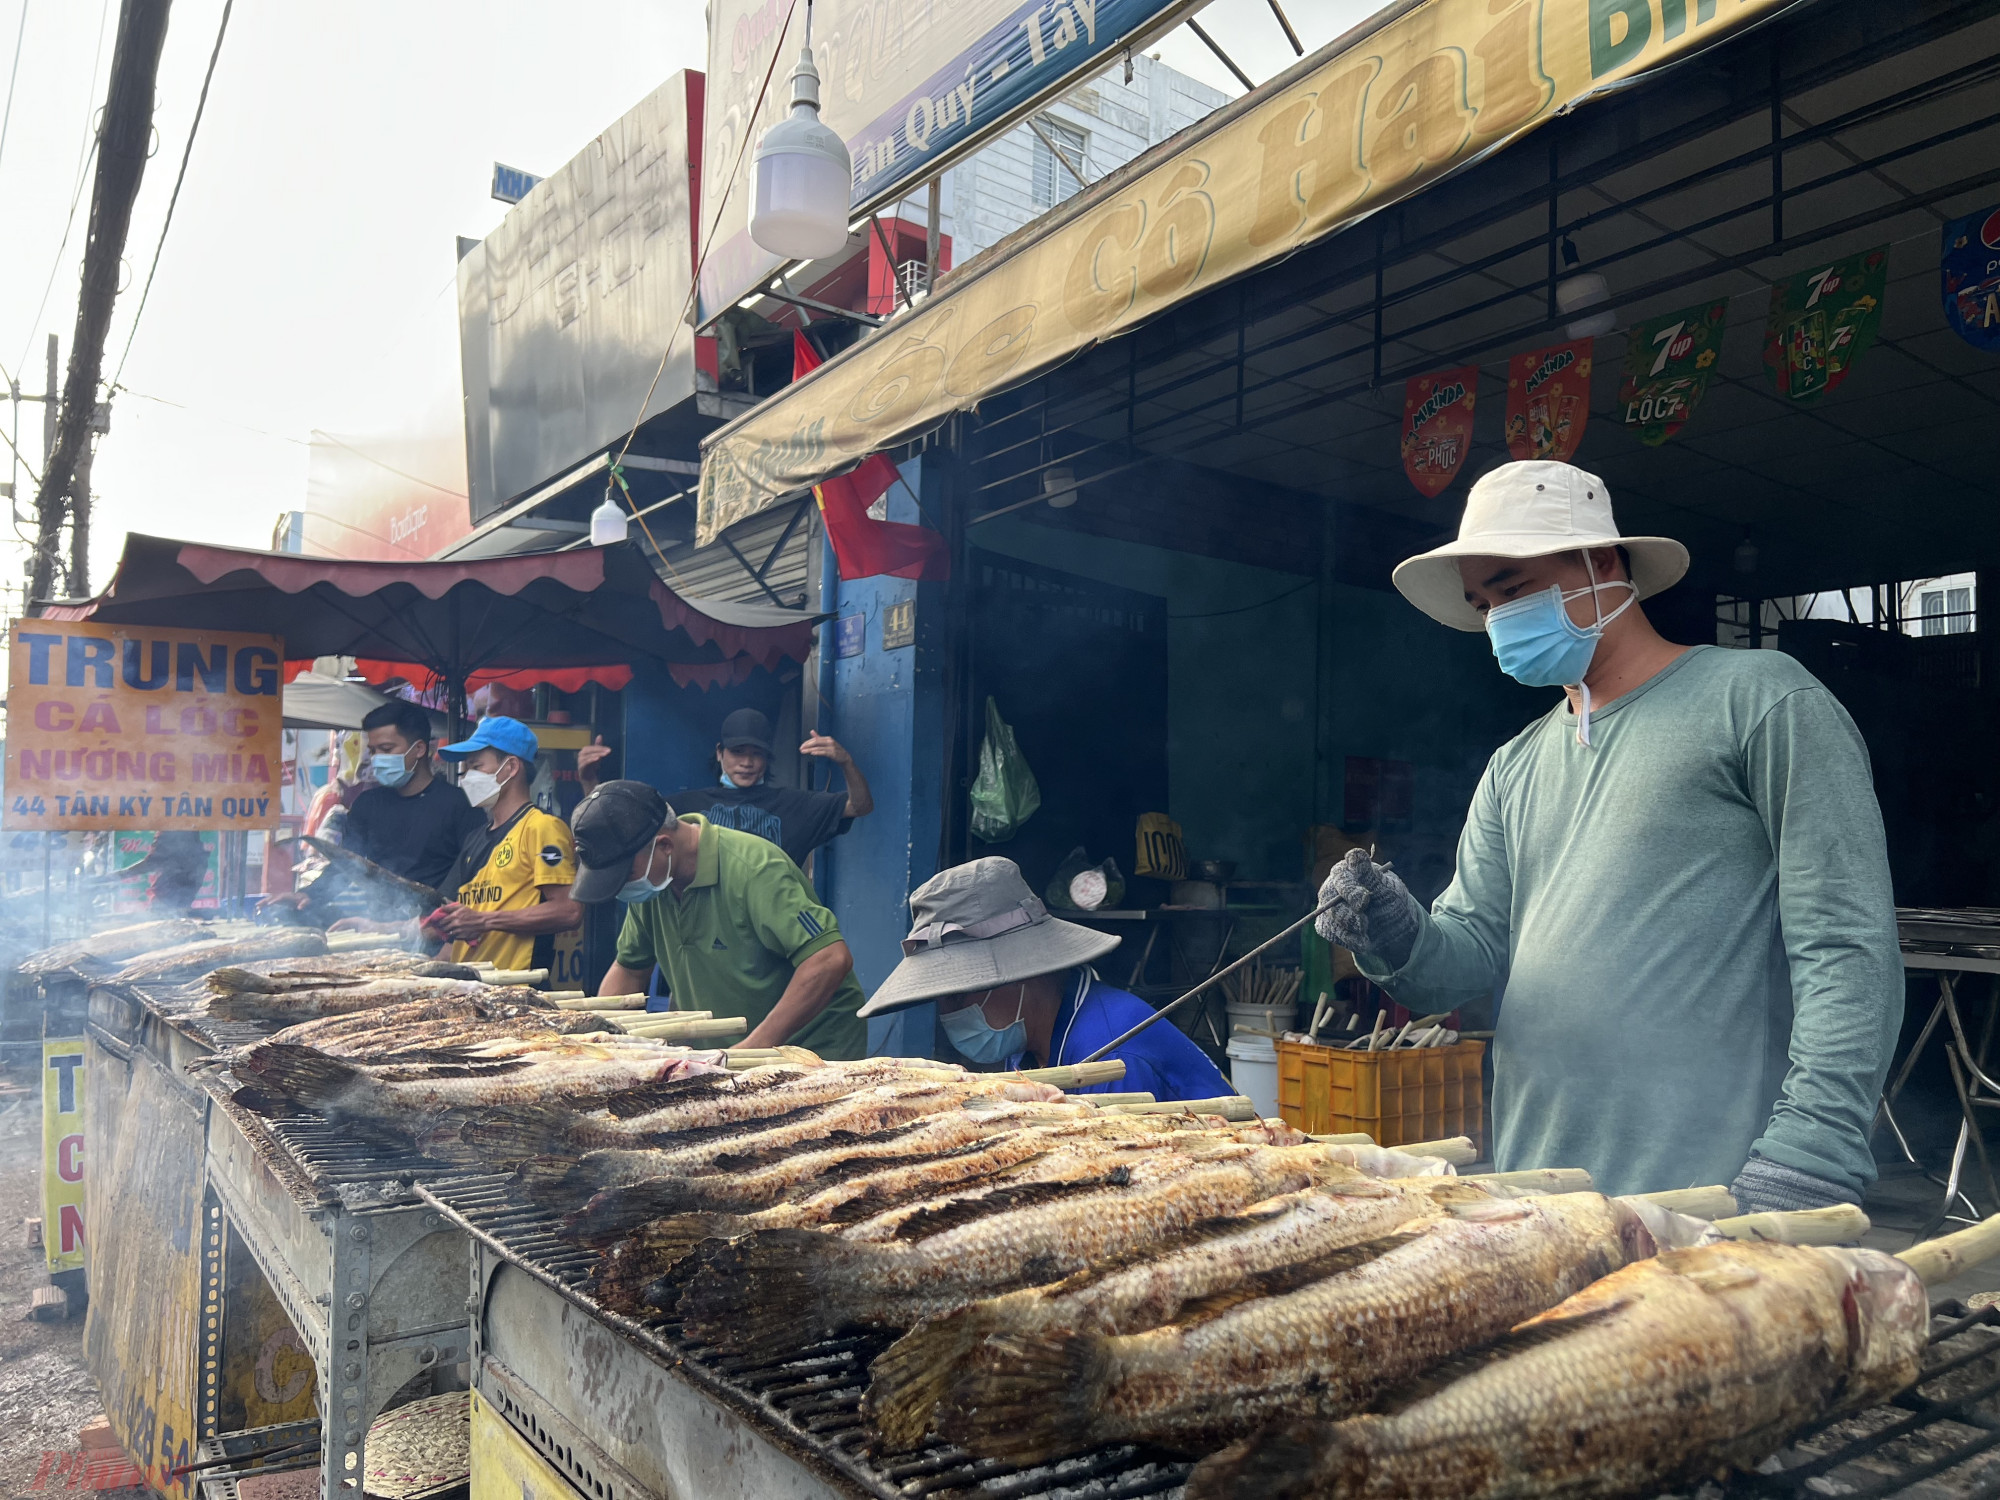 Trên con đường Tân kỳ Tân Quý (Q. Tân Phú, TPHCM) như thường lệ mọi năm cứ từ mùng 9 Tết, con đường mịt mù khói, mùi cá lóc nướng thơm lừng từ những điểm bán cá nướng sớm phục vụ cho khách hàng cúng vía Thần Tài (mùng 10 Tết).